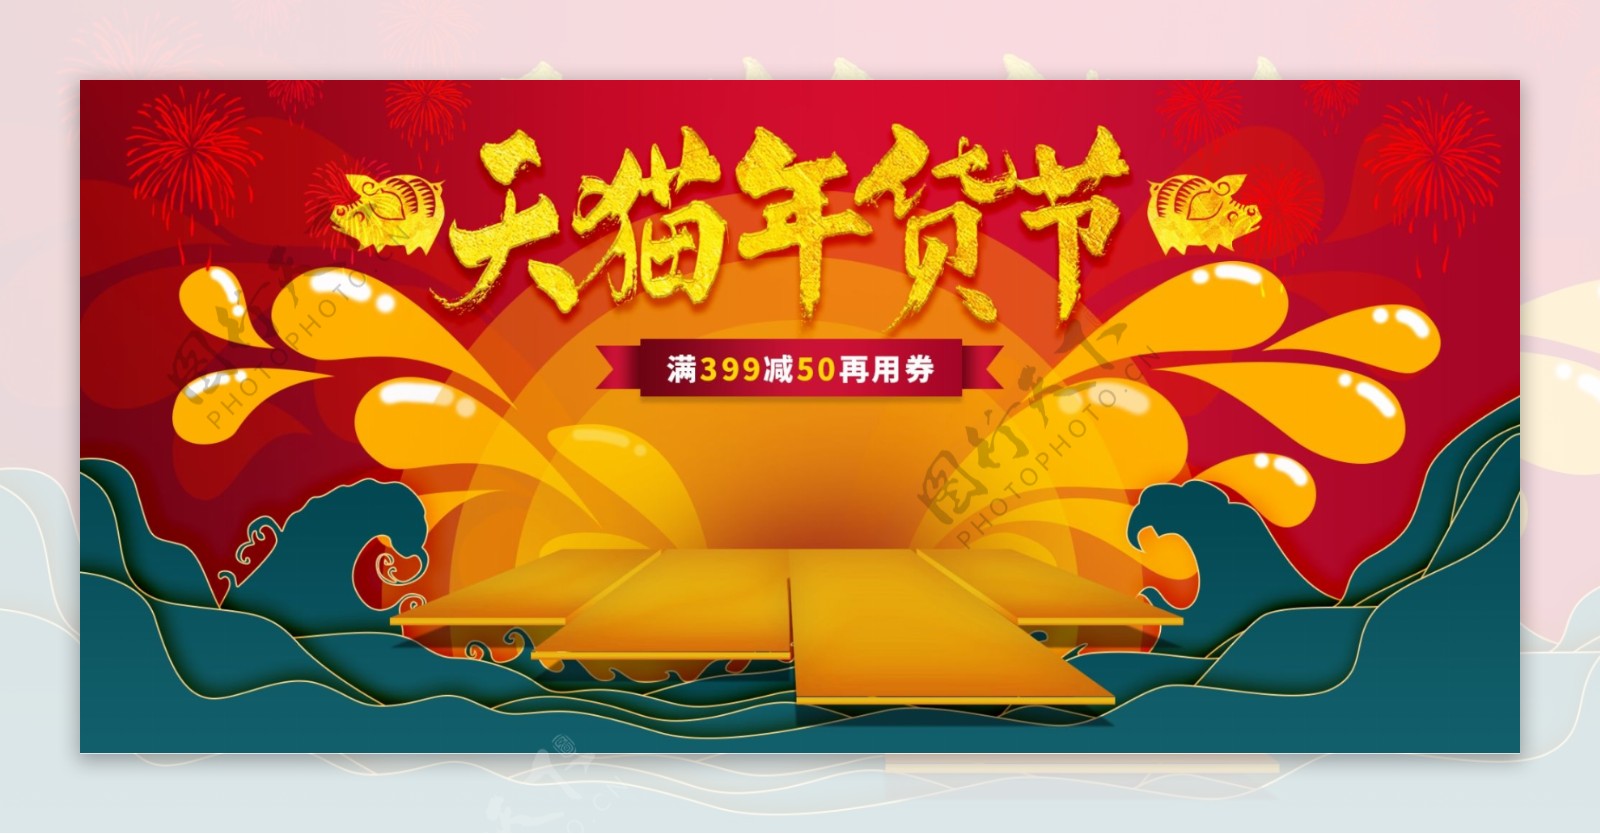 天猫年货节红金中国风促销海报banner